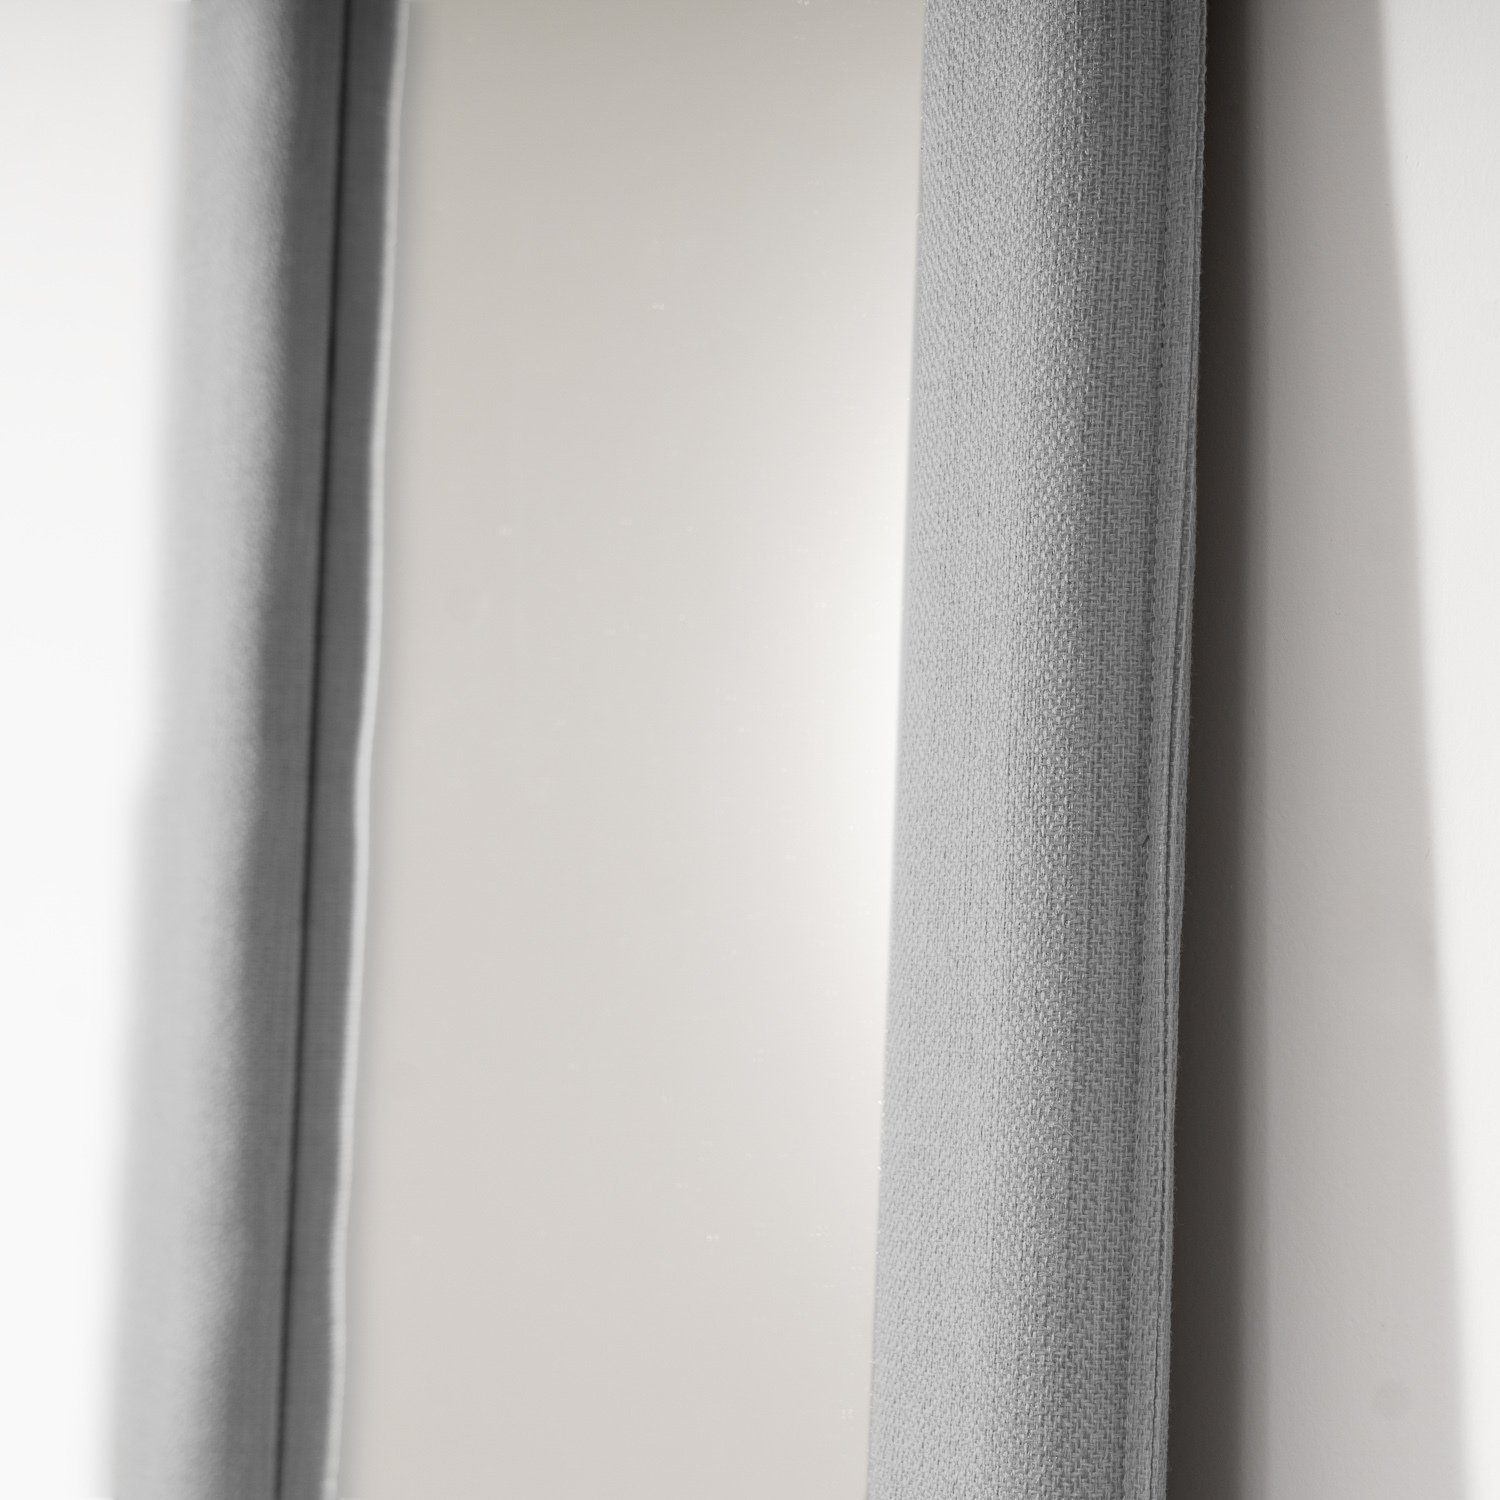 Espelho Decorativo Retangular 196x68cm Boreal Cabecasa MadeiraMadeira - 8